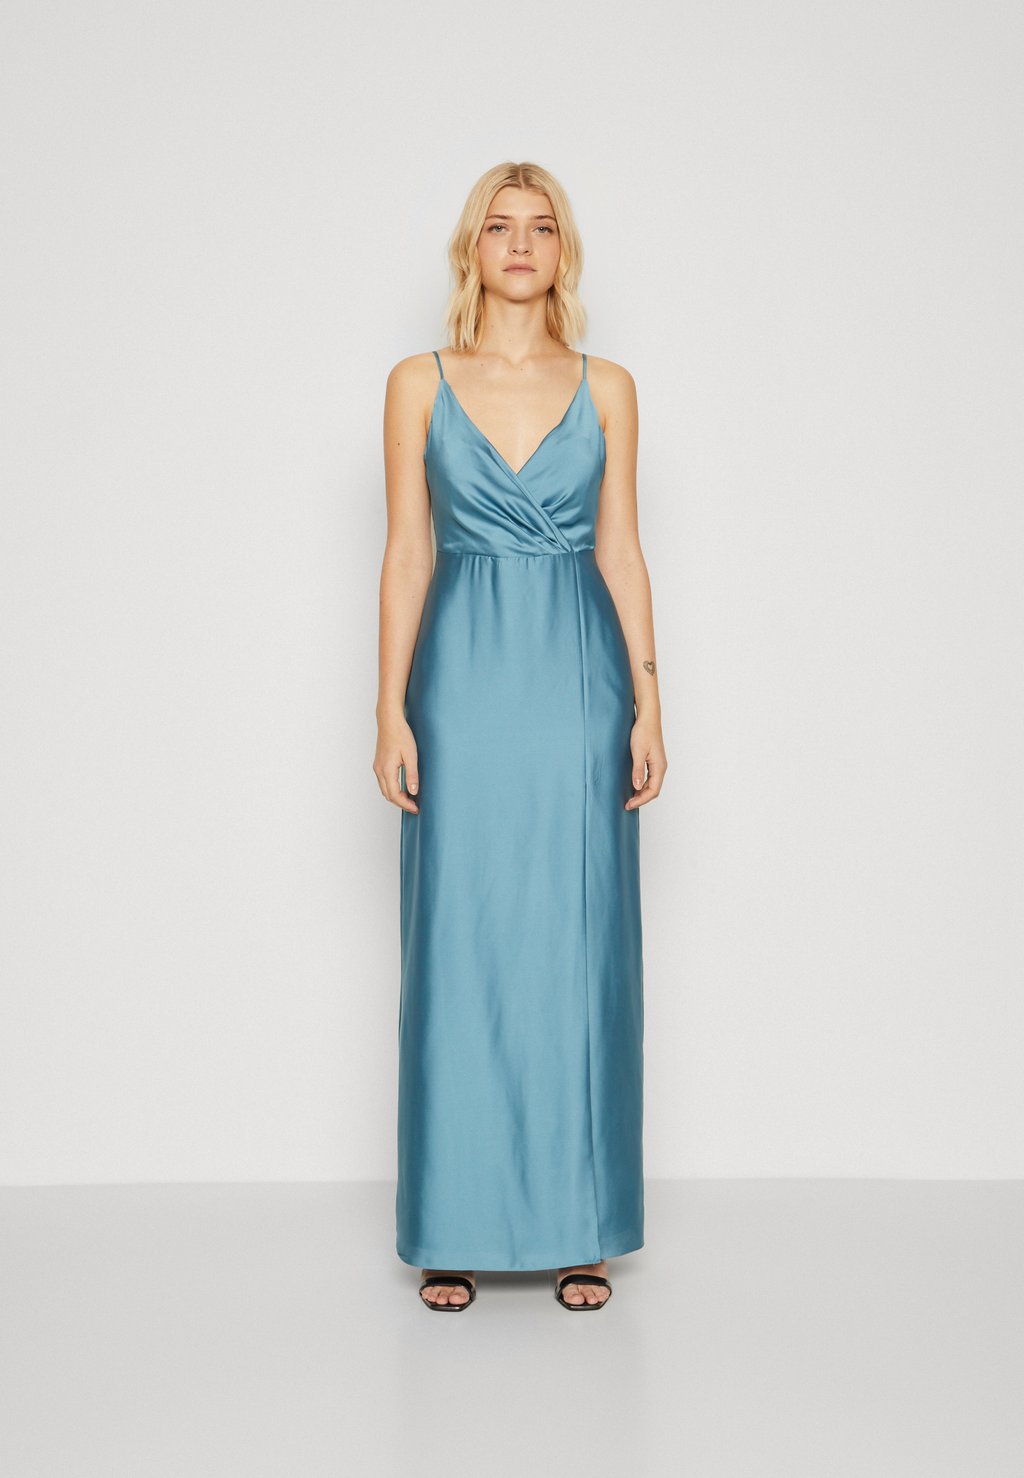 Вечернее платье Slipdress Swing, цвет aqua blue aqua blue